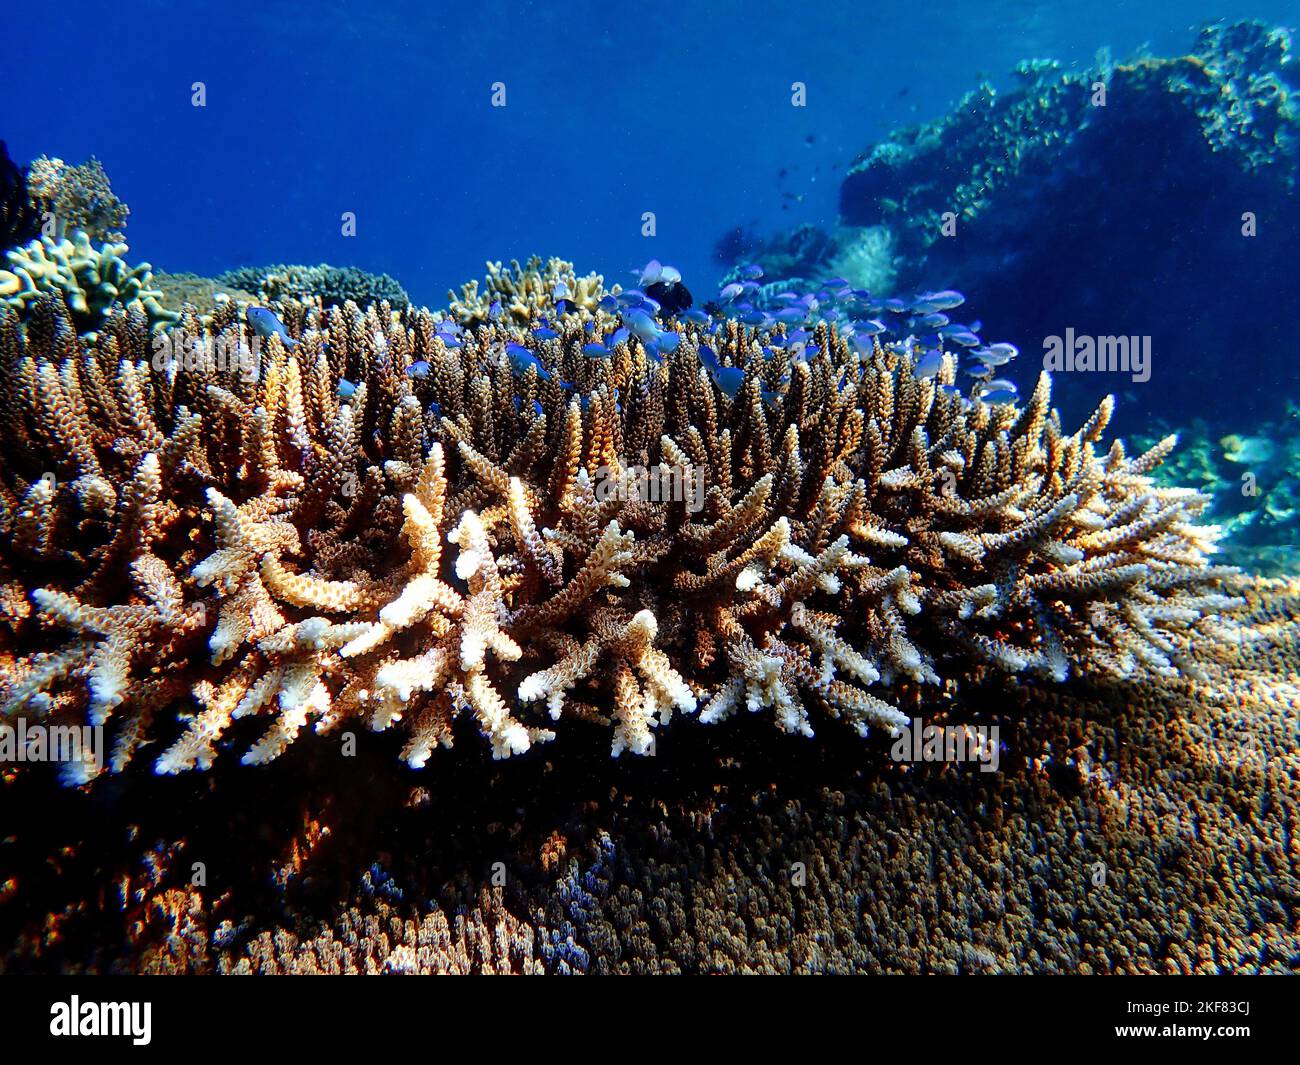 Indonesia Alor Island - Meeresleben Korallenriff mit tropischen Fischen Stockfoto